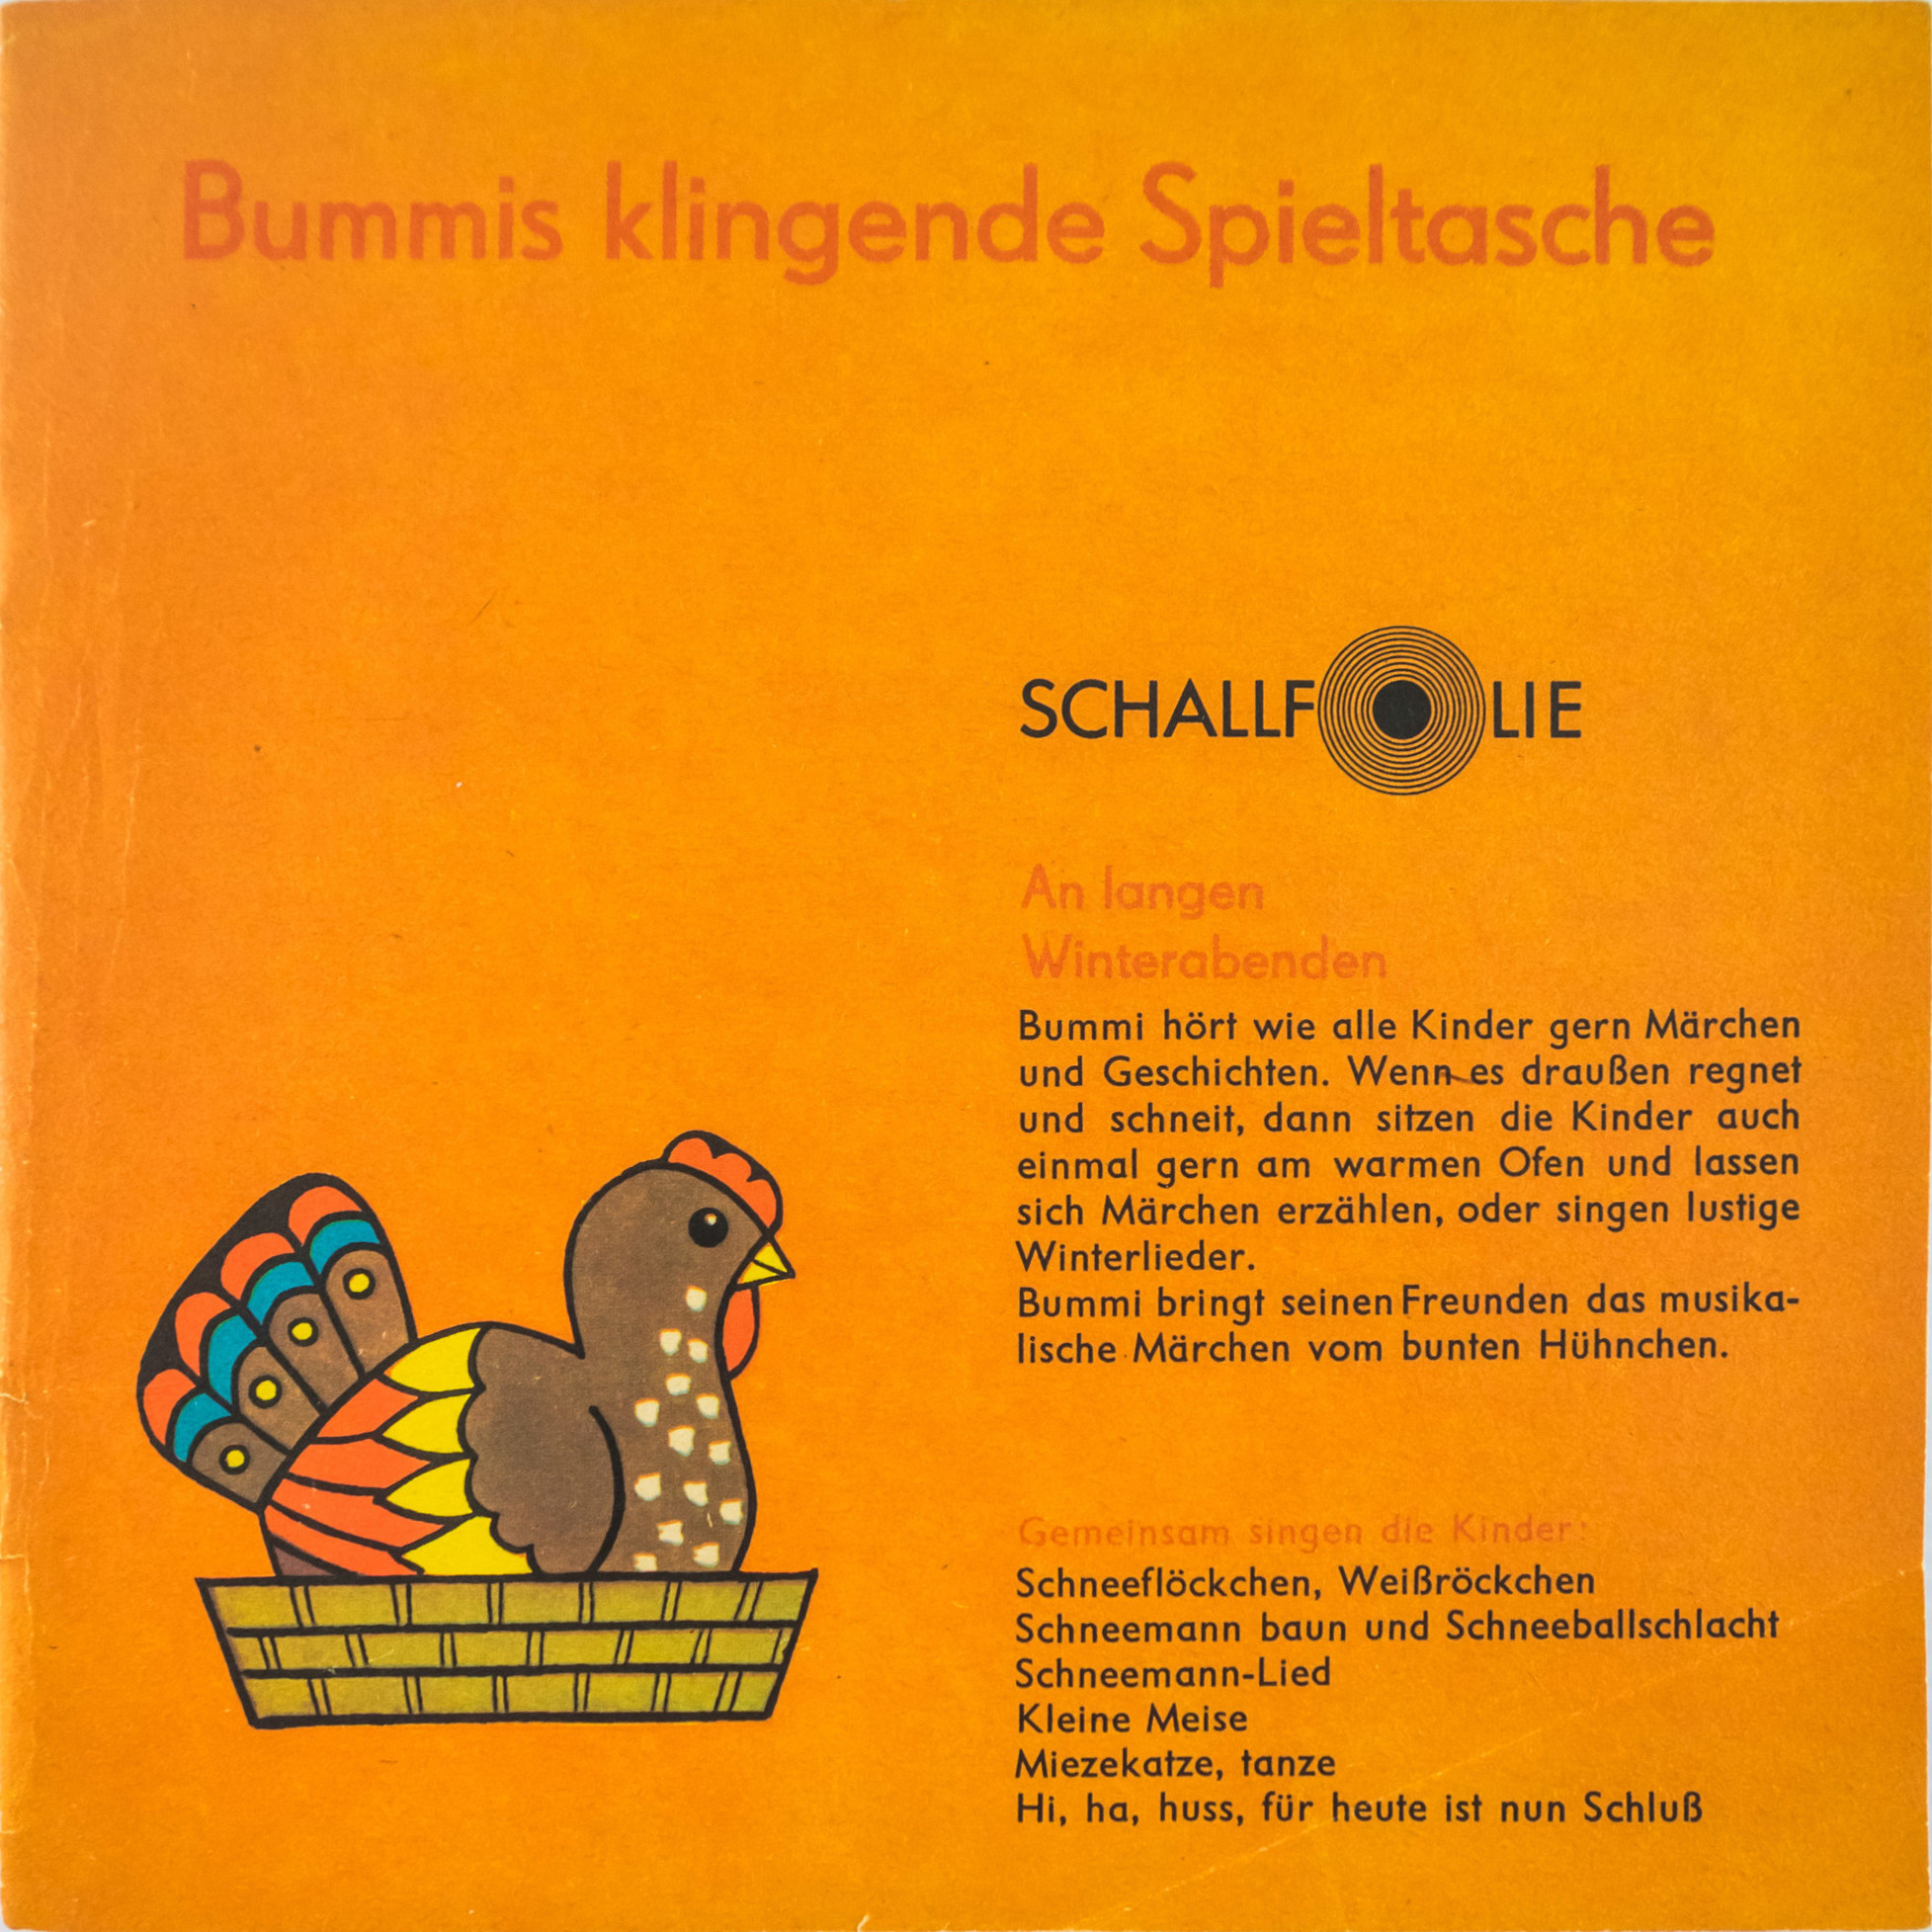 Приложение к детскому журналу "Bummi" (ГДР)